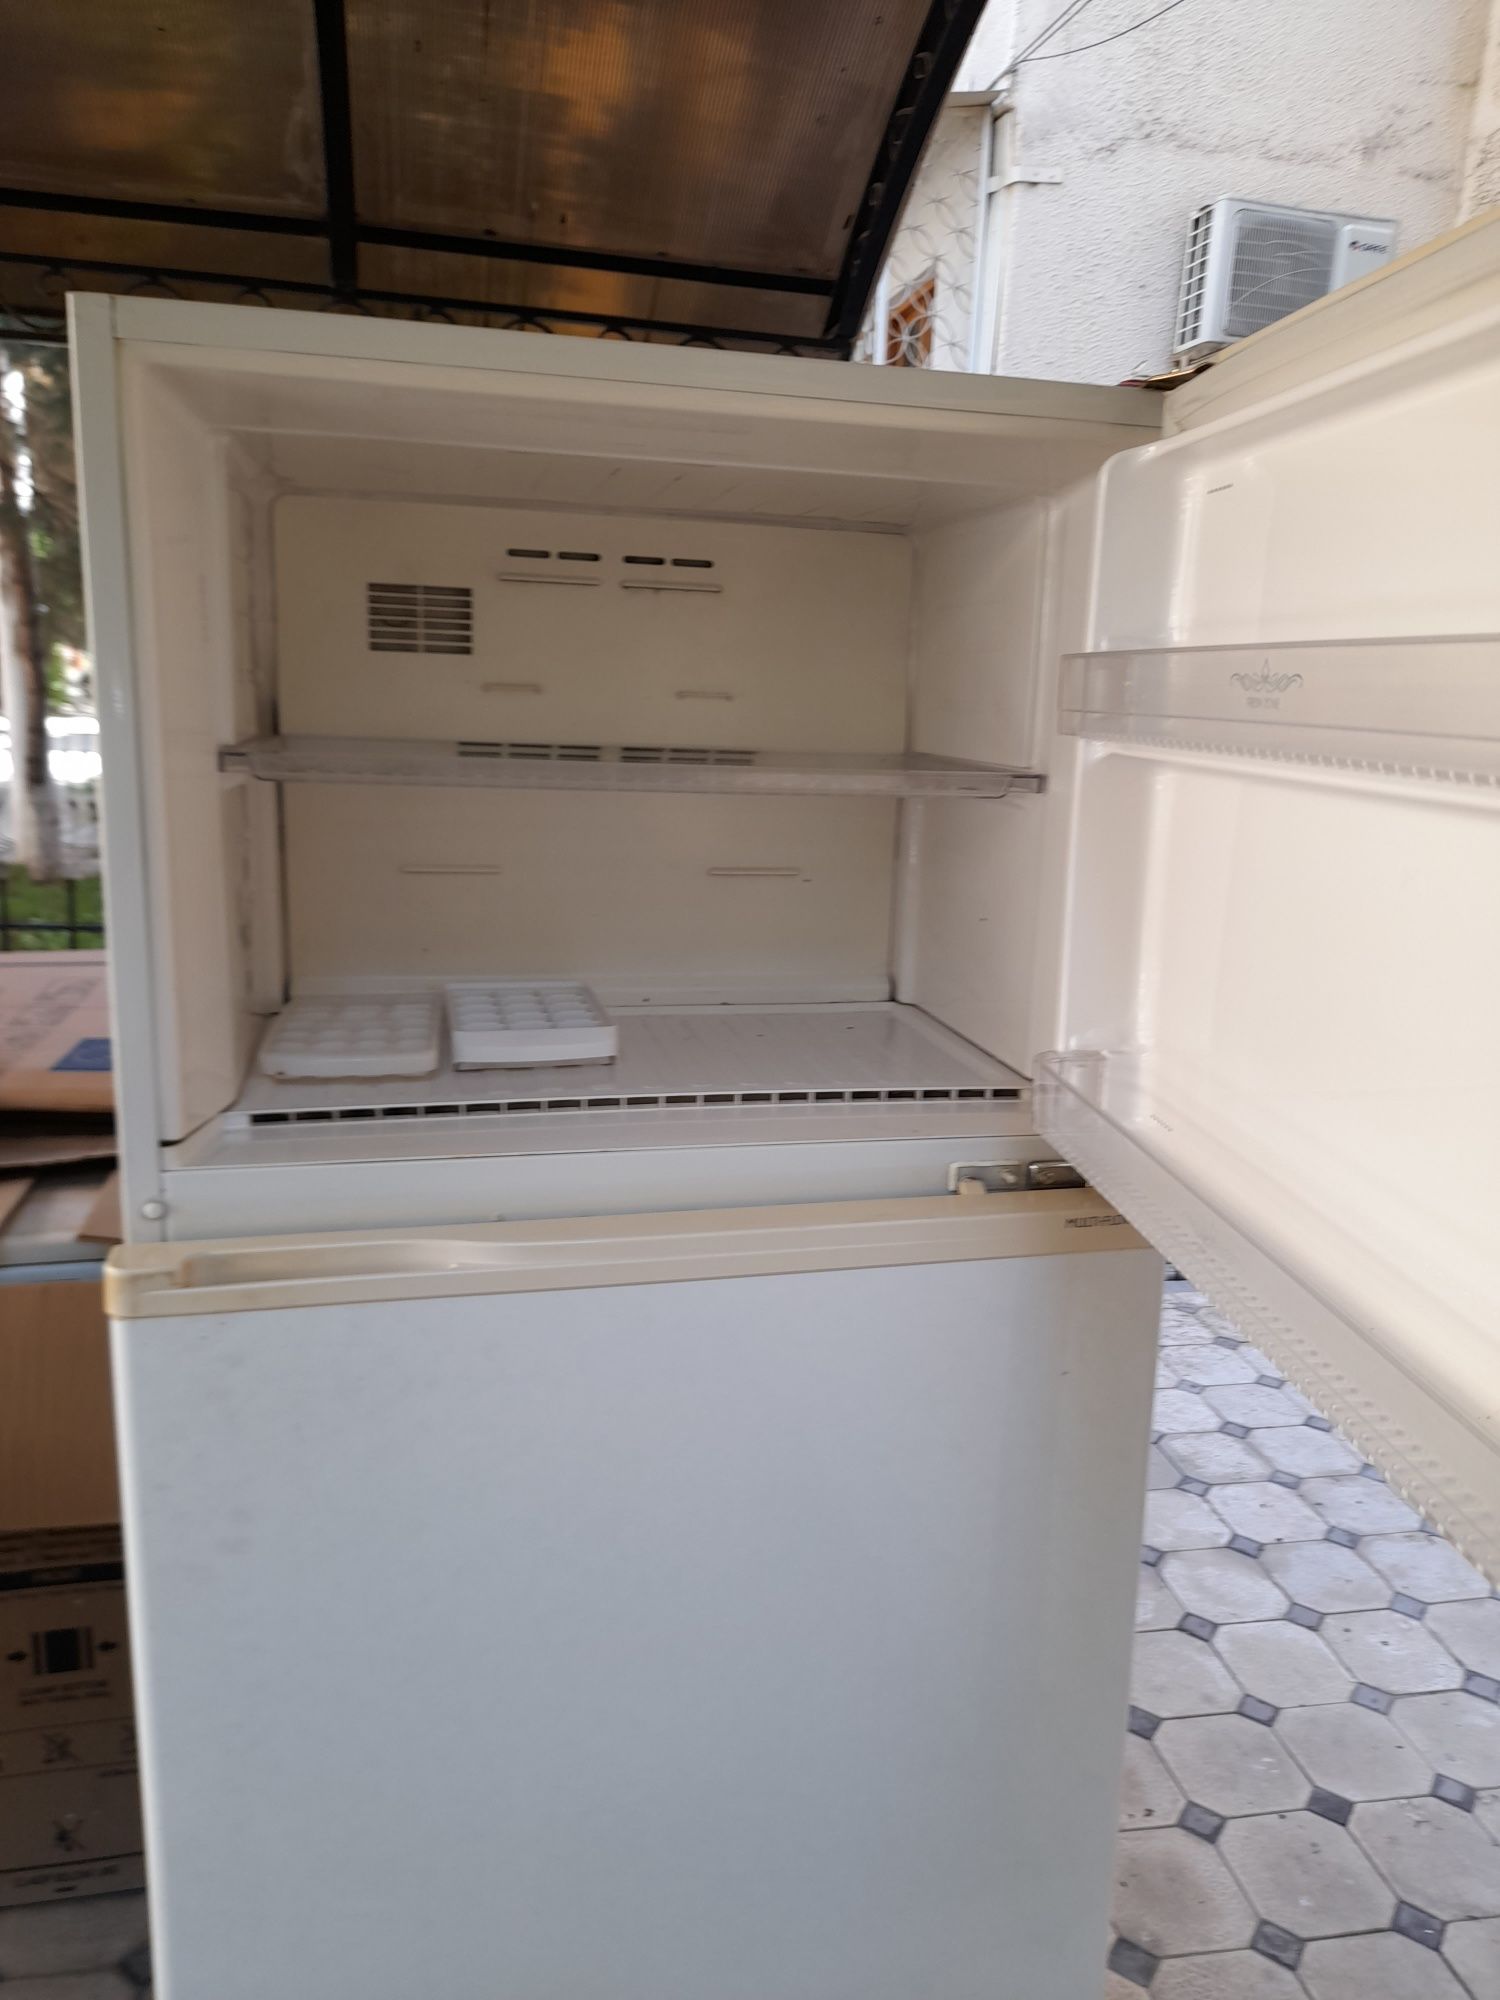 Срочно продается холодильник!